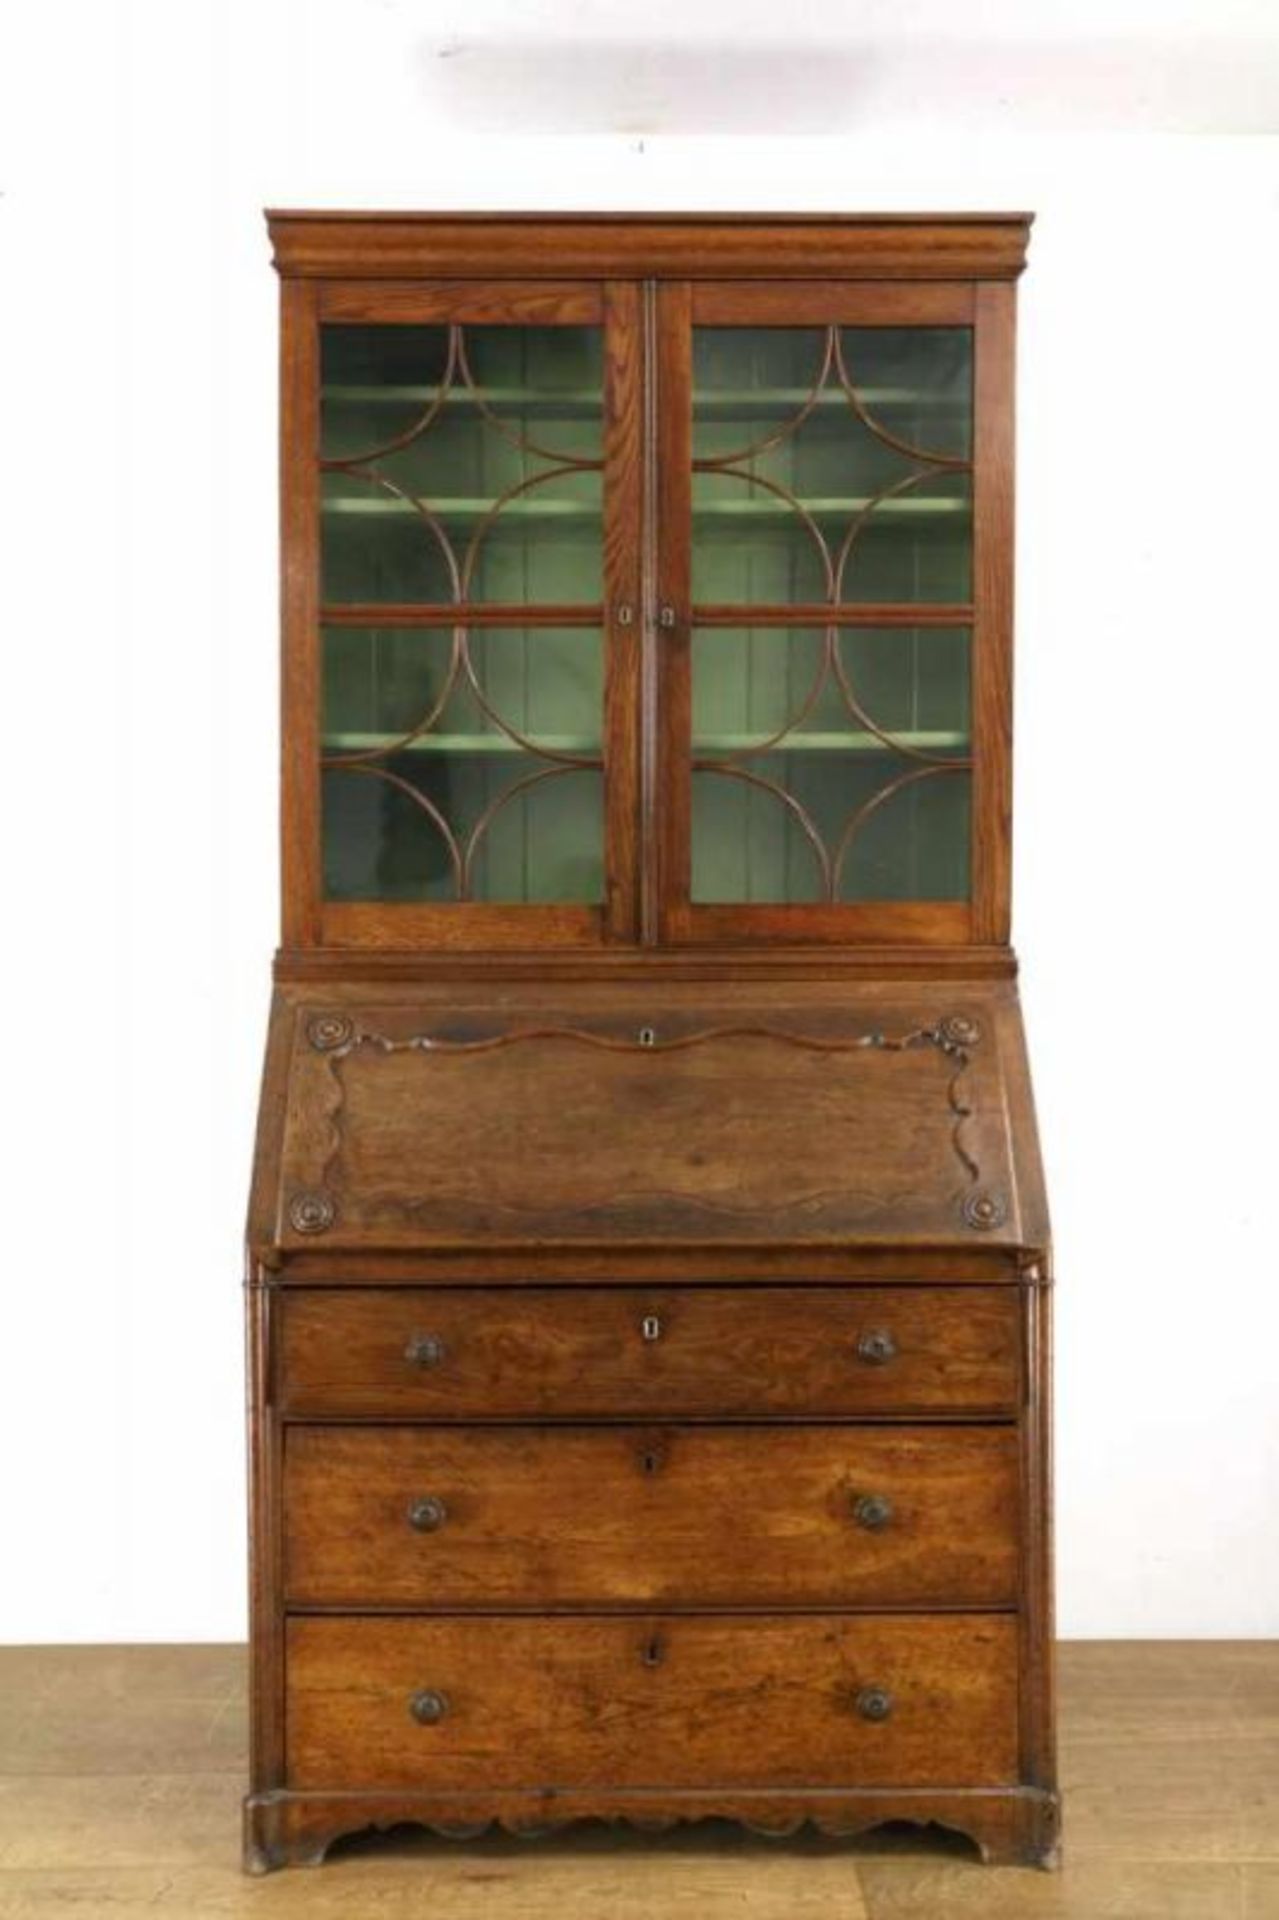 Engeland, eikenhouten bureau-boekenkast, 19e eeuw, in twee verdelingen. De bovenkast met rechte